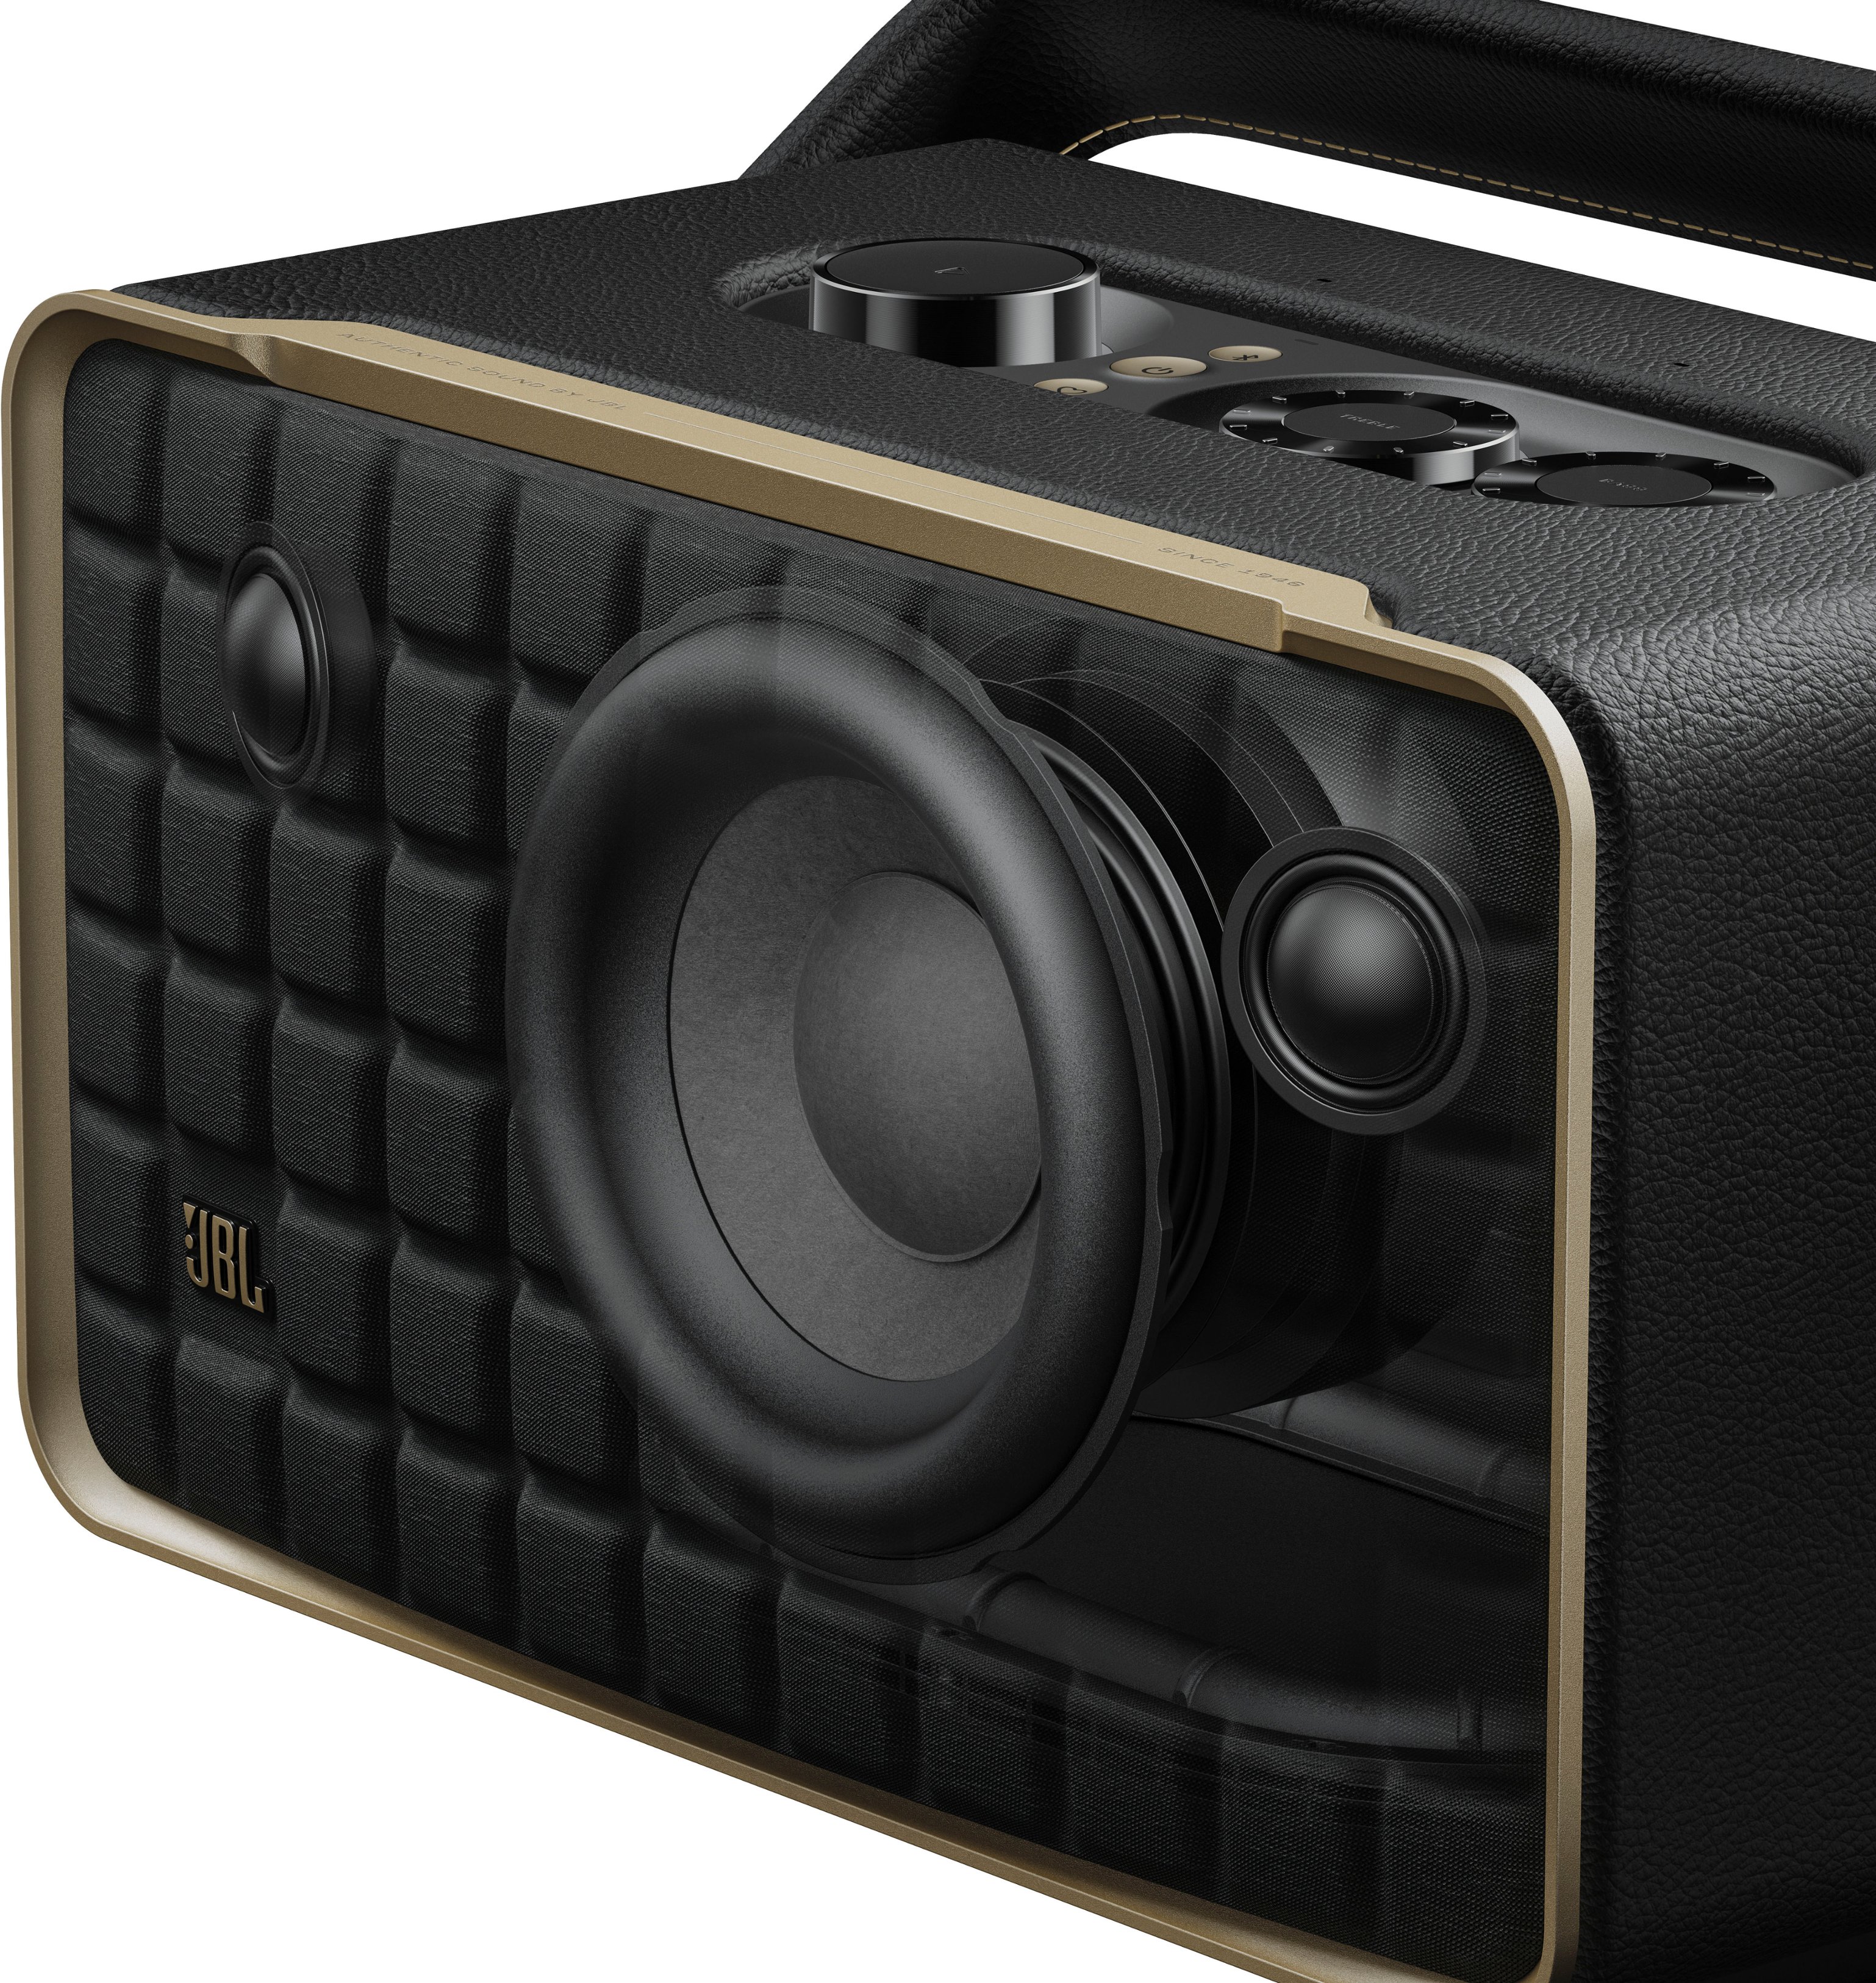 JBLAUTH300BLKAM Authentics Buy Smart - JBL Best Black Speaker Home 300